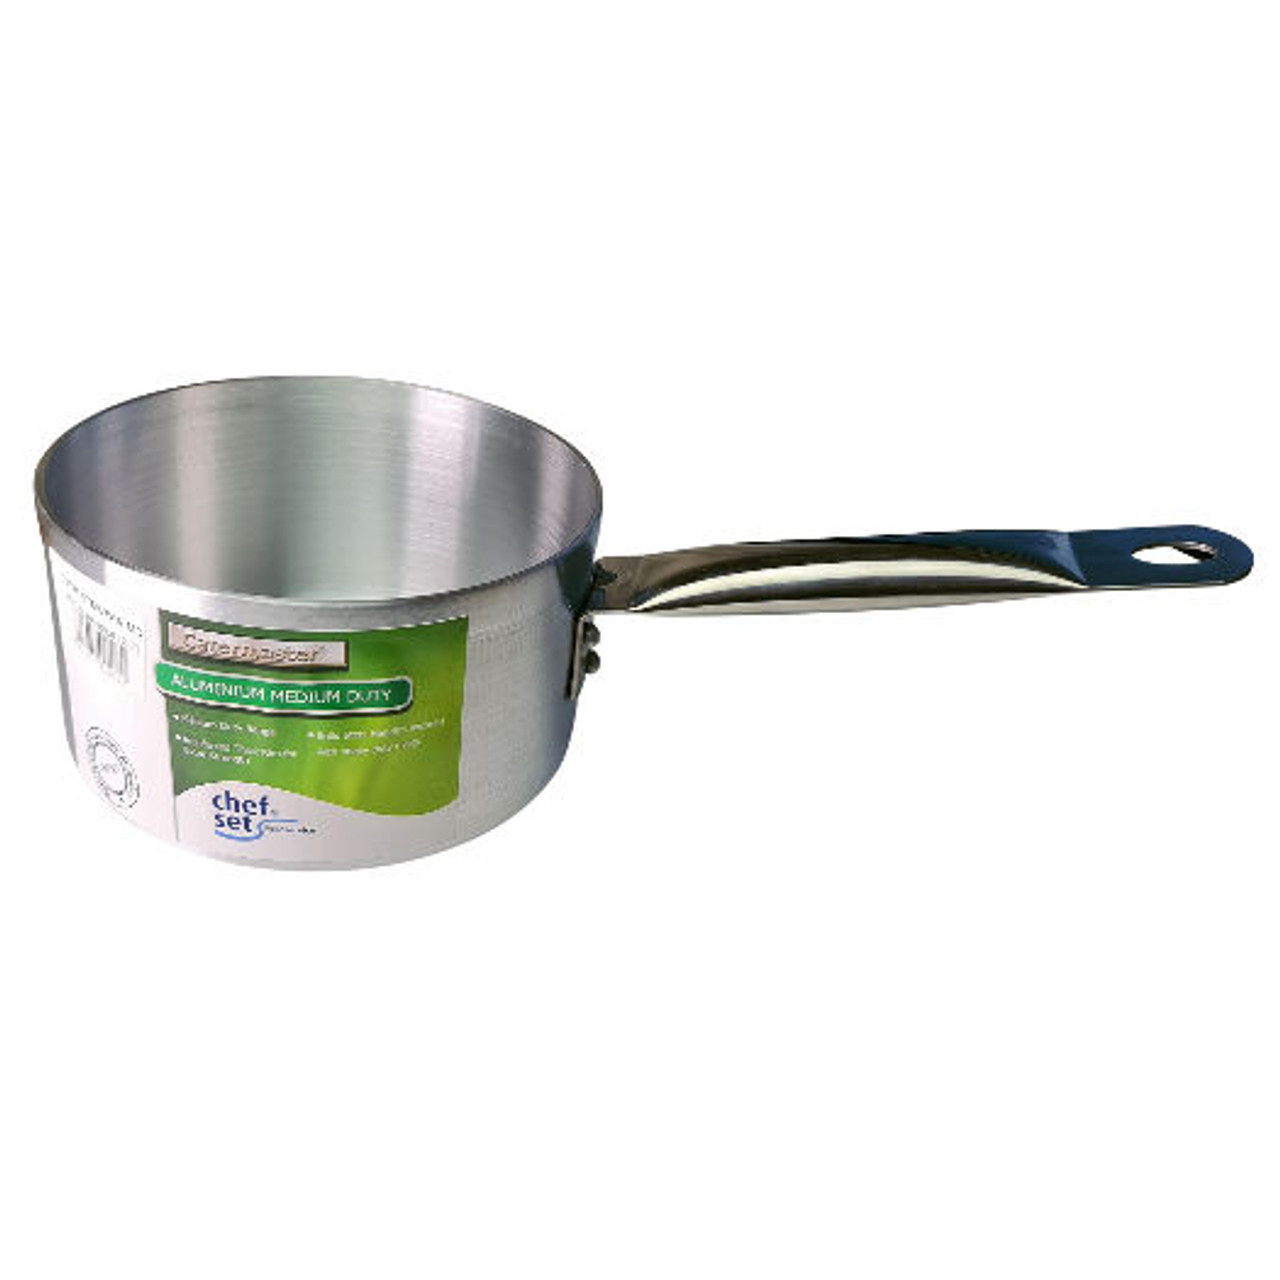 Professional Aluminium Cookware Medium Duty PAN 160mm dia 2 Litre